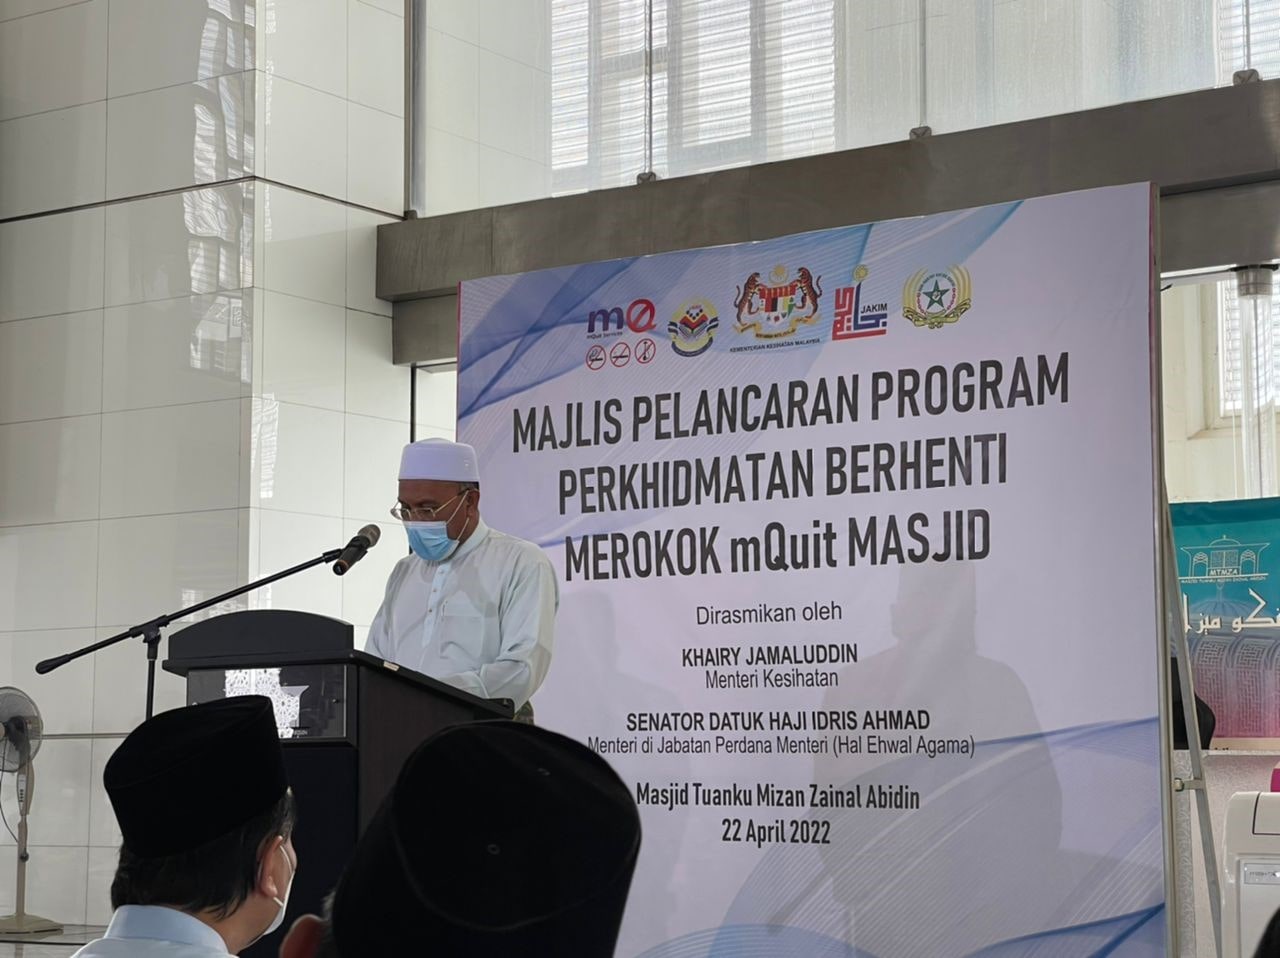 Majlis Pelancaran Program mQuit Masjid 2